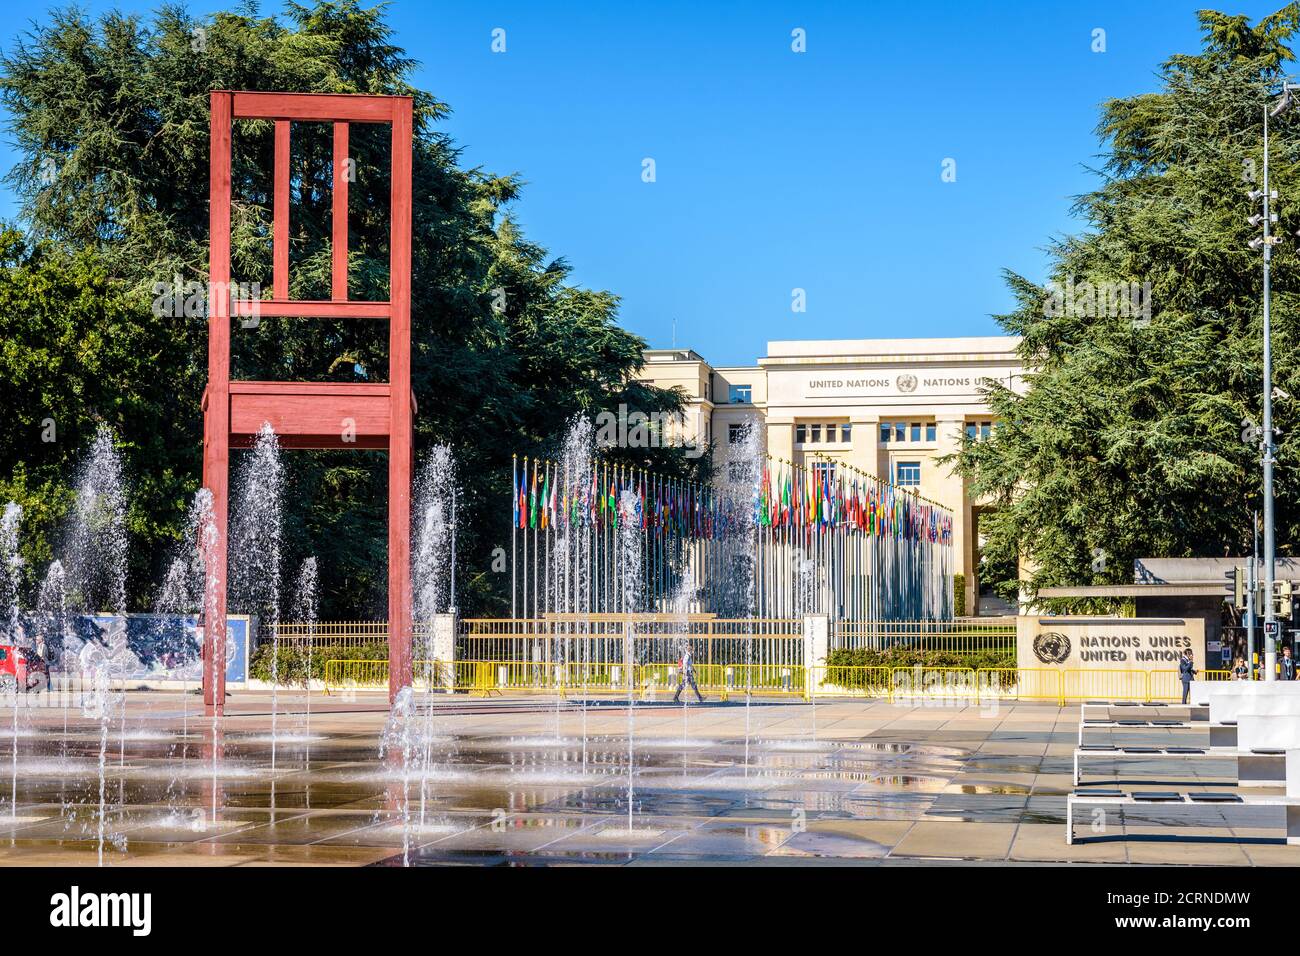 La escultura "Broken Chair" se encuentra en la plaza de las Naciones, frente al Palacio de las Naciones, sede de la Oficina de las Naciones Unidas en Ginebra, Suiza. Foto de stock